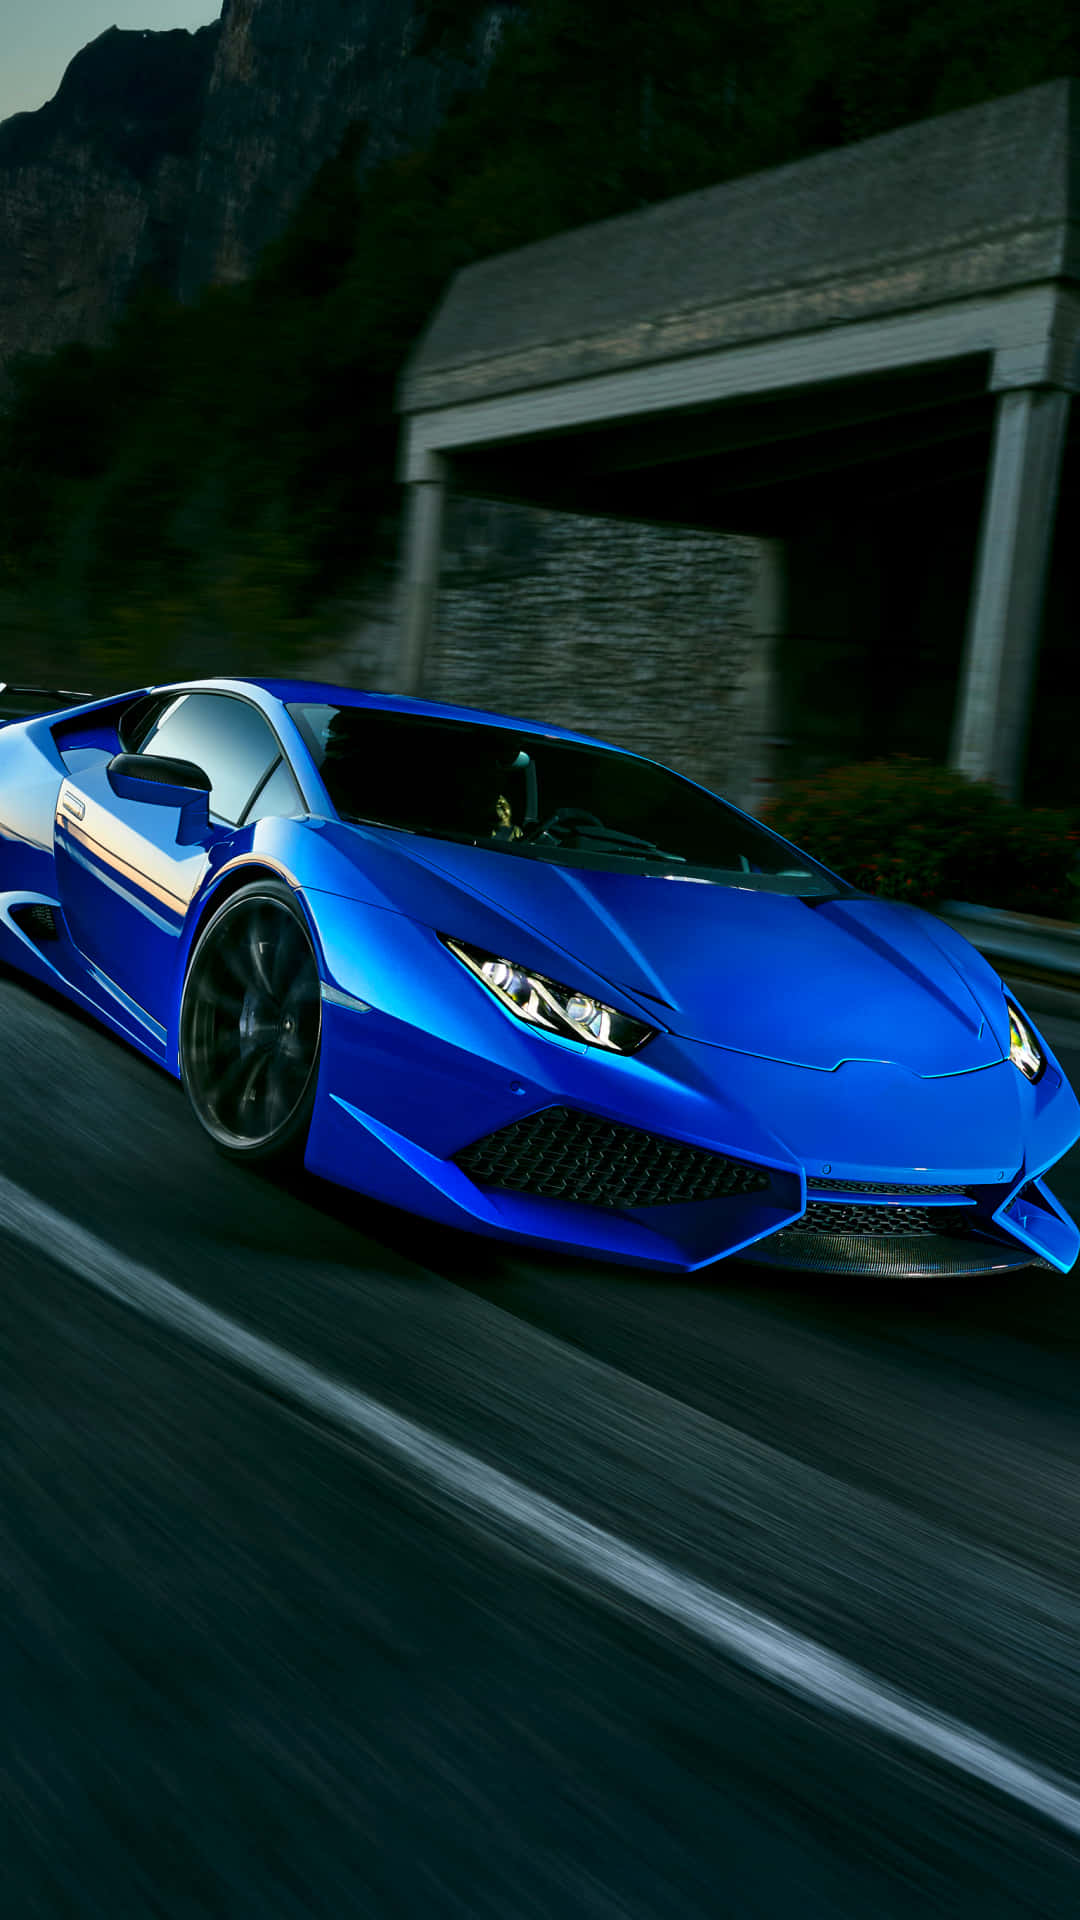 Derblaue Lamborghini Bietet Ein Luxuriöses Fahrerlebnis, Das Einen Adrenalinschub Verleiht. Wallpaper